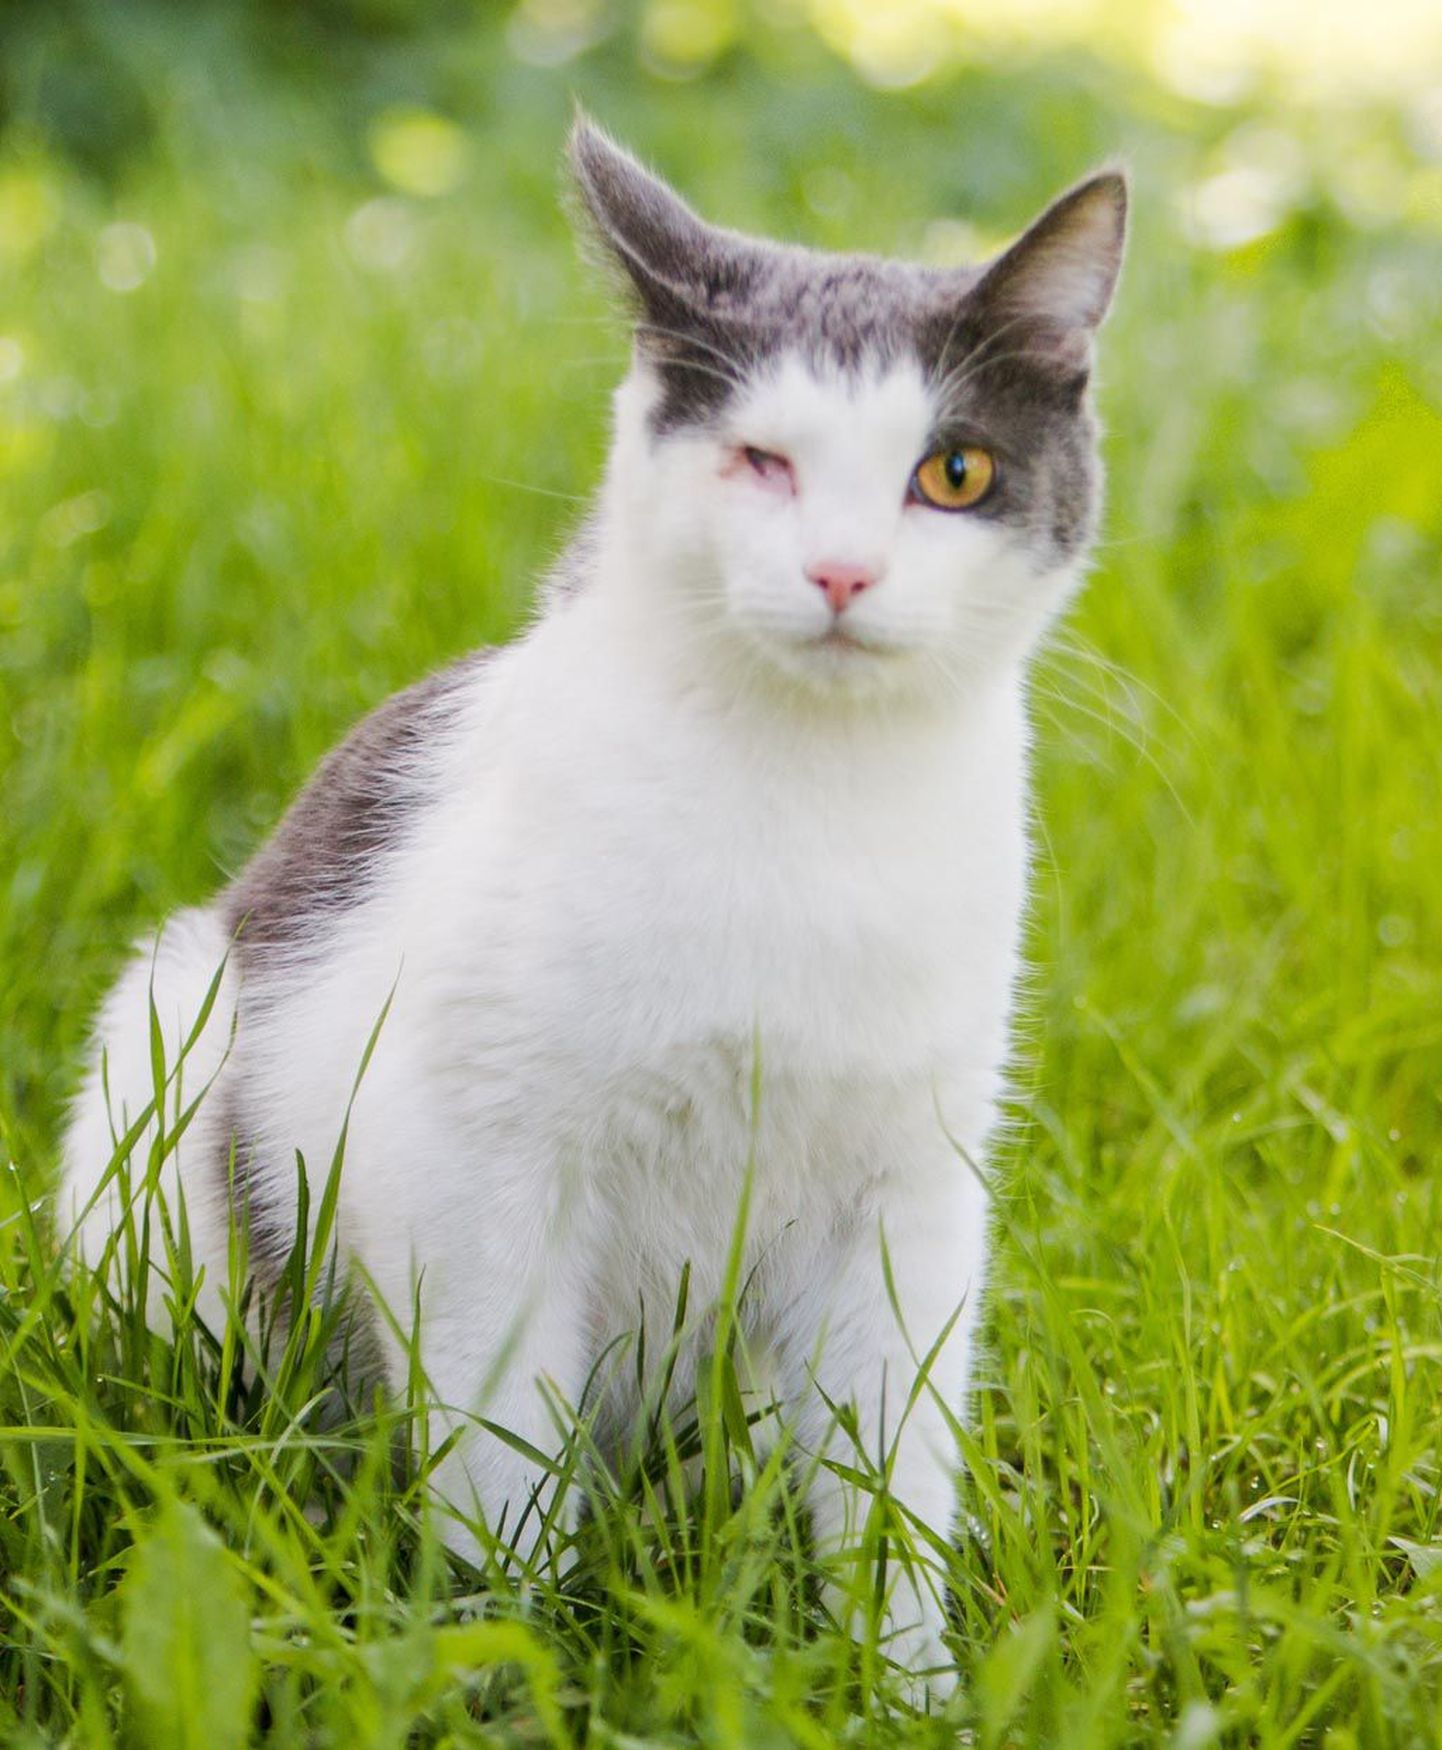 Imepisikesest Koshast on kasvanud terve ja elavaloomuline kass, kes on terve maailmaga sõber.